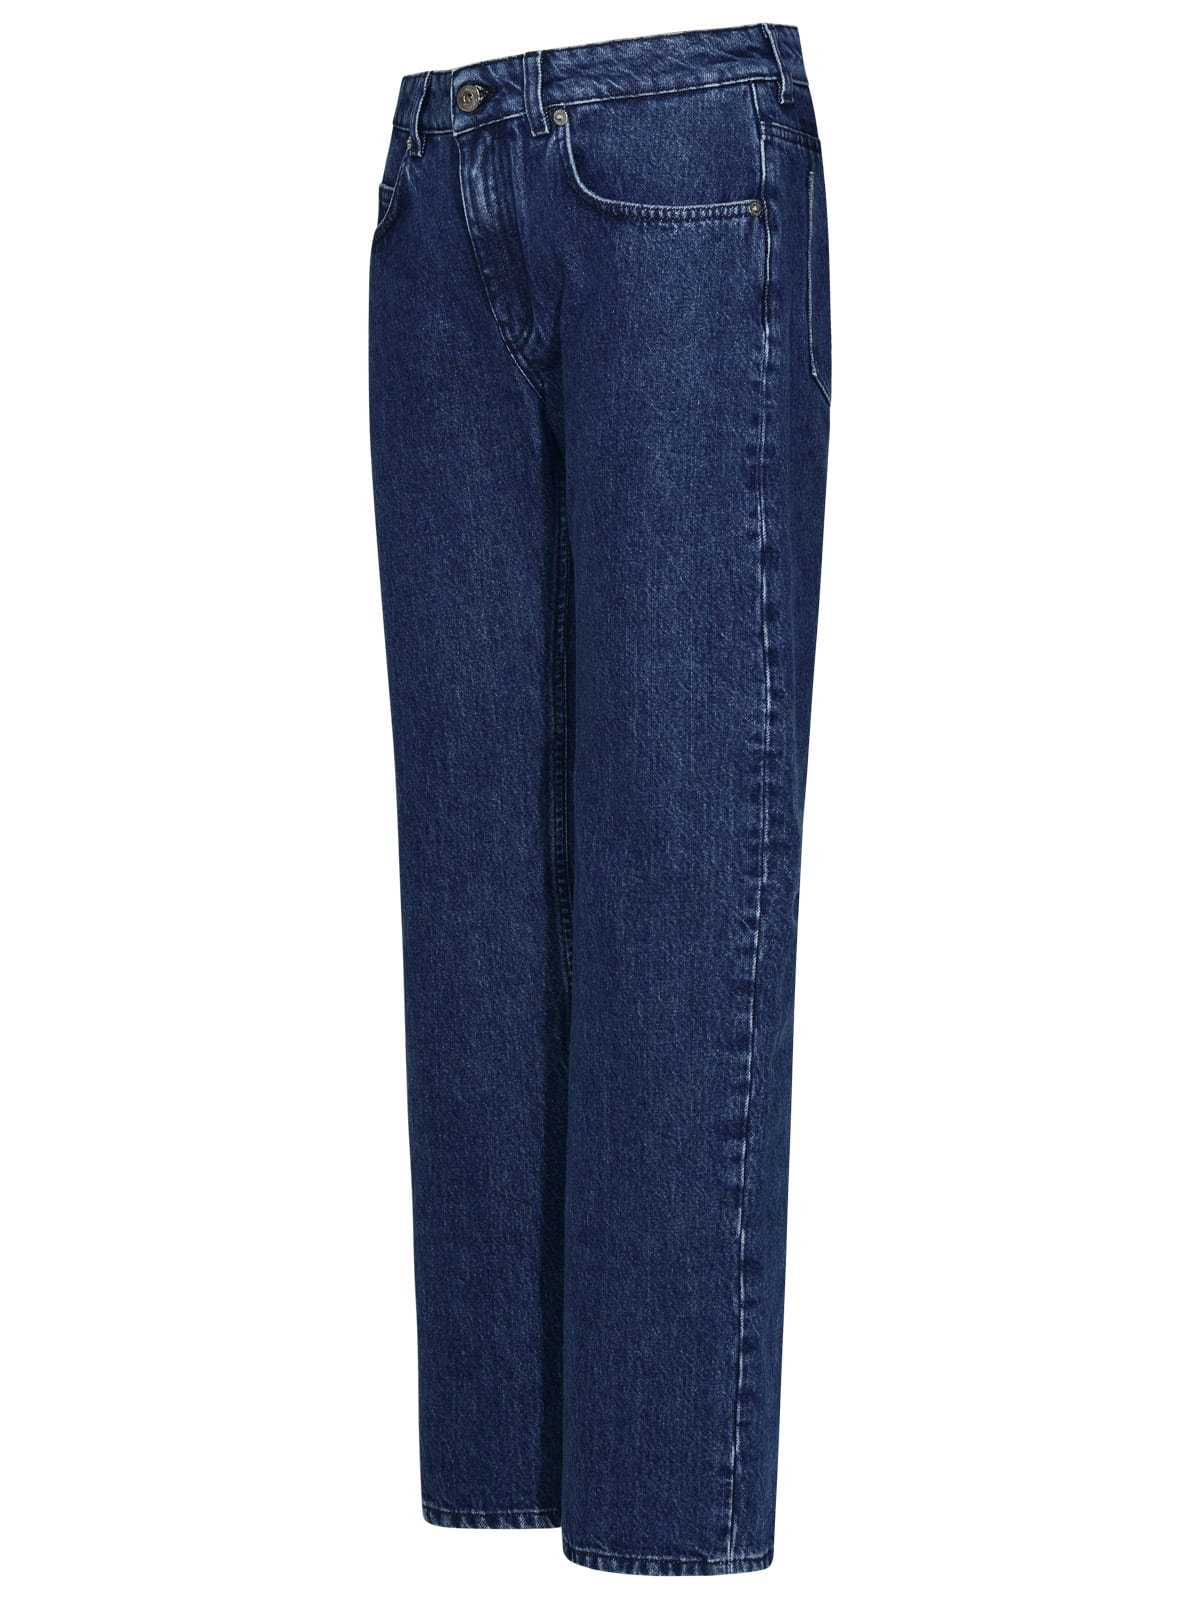 Shop Off-white 90s Blue Cotton Jeans